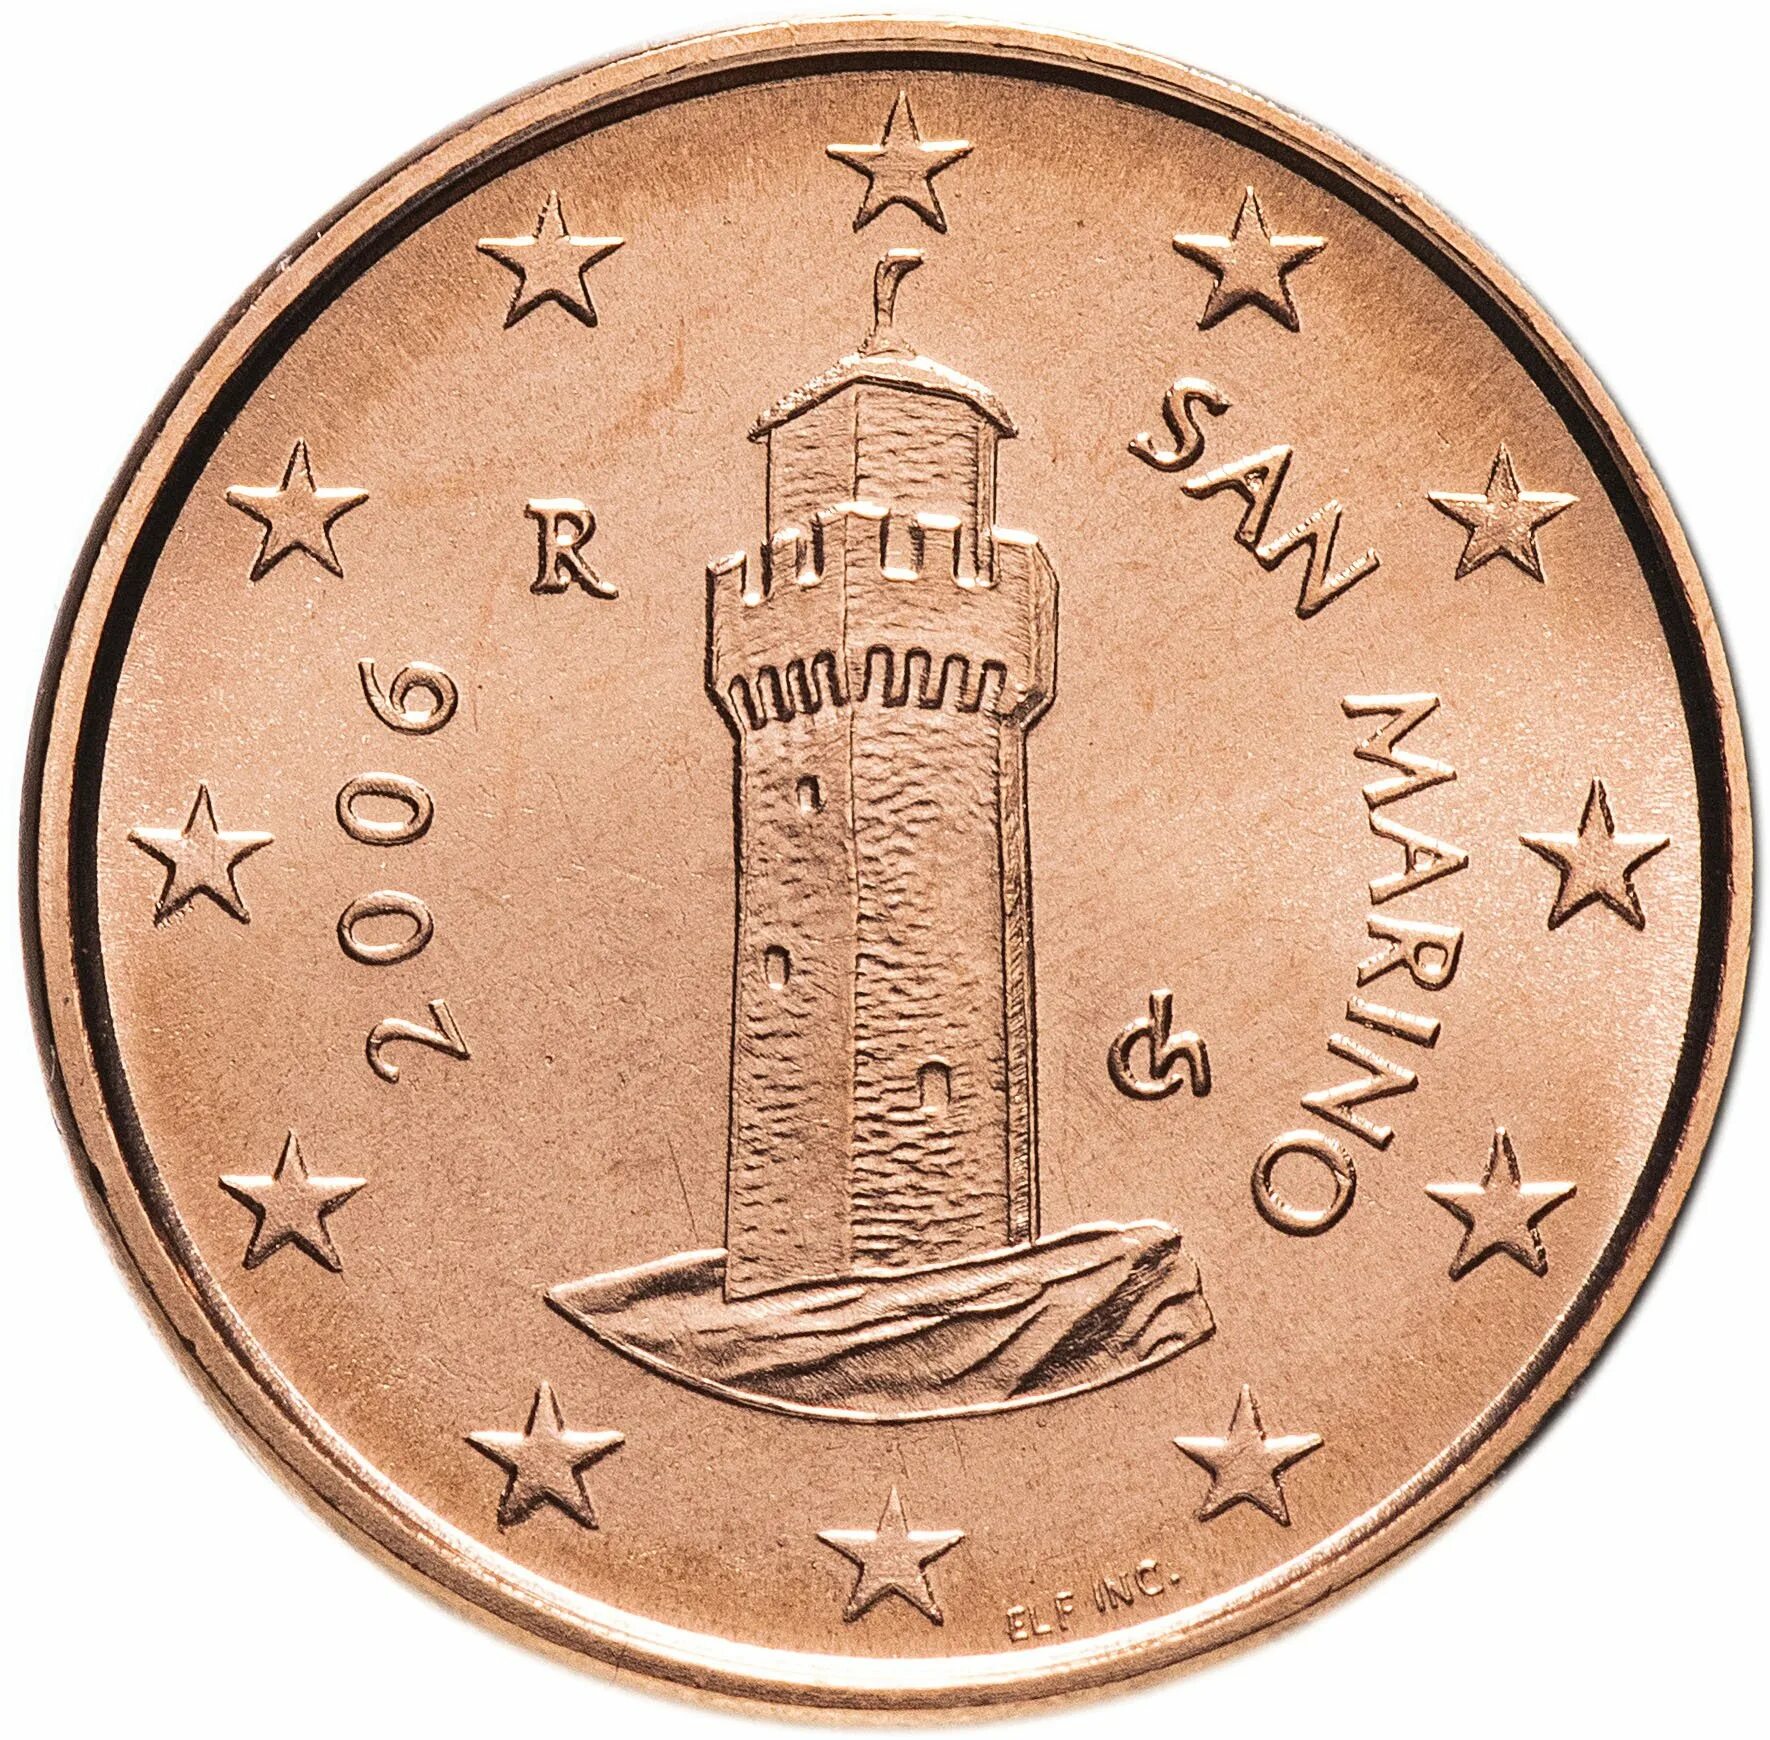 Сан Марино монеты 2 евроцента. 5 Евро цент Сан Марино 2002. 2 Евро цент Сан Марино 2002. 1 Евро цент Сан Марино 2002. Евро сан марино